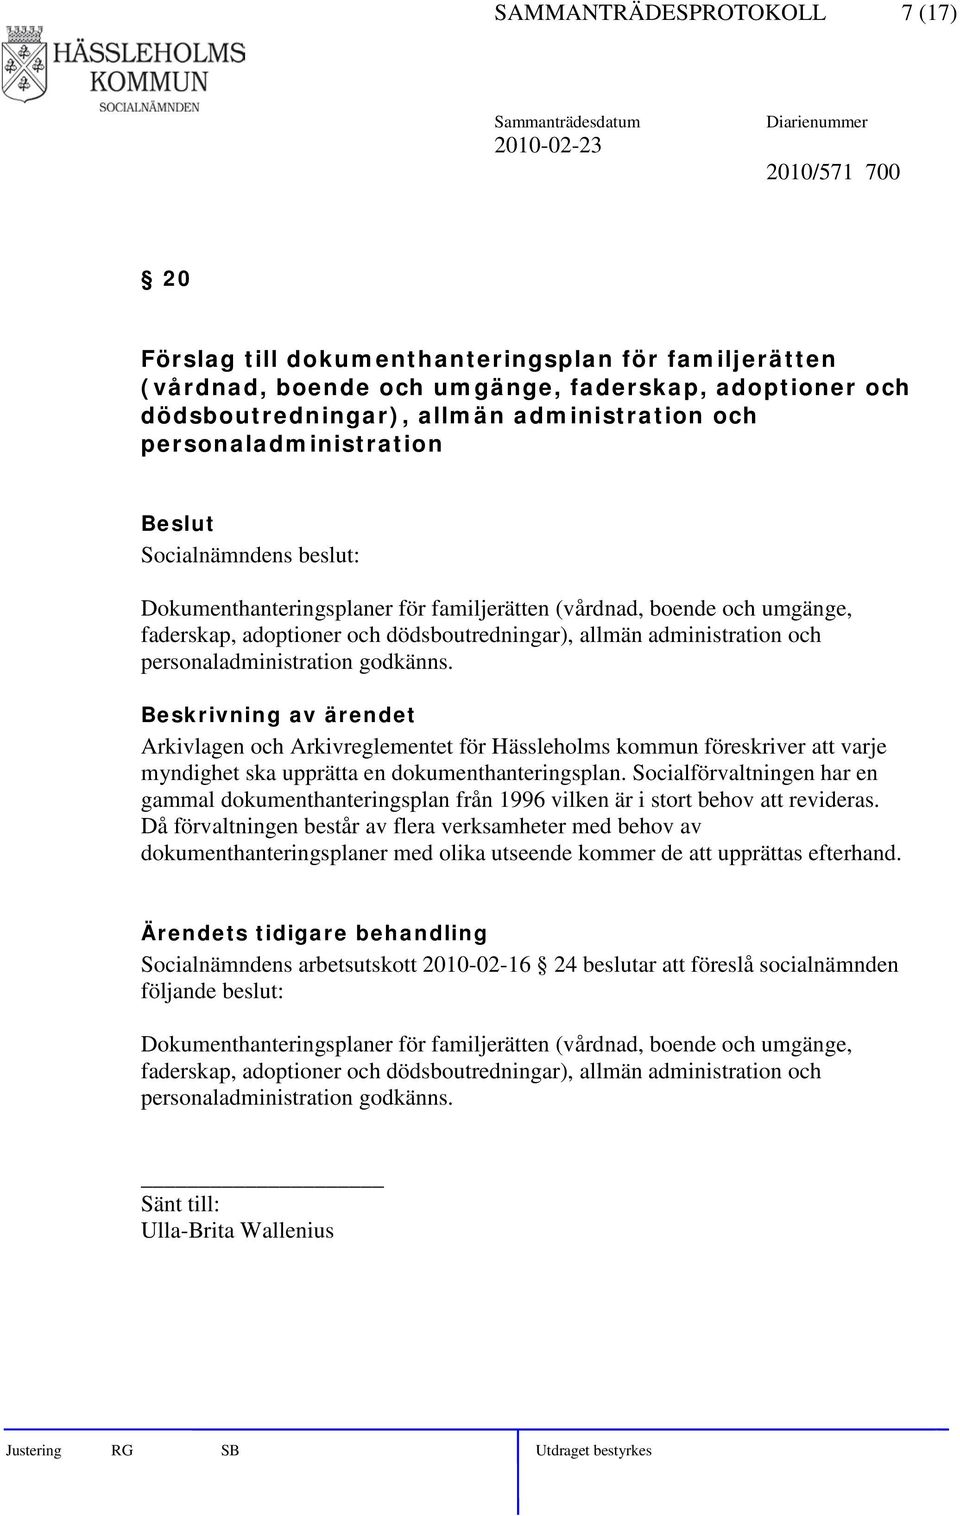 godkänns. Arkivlagen och Arkivreglementet för Hässleholms kommun föreskriver att varje myndighet ska upprätta en dokumenthanteringsplan.